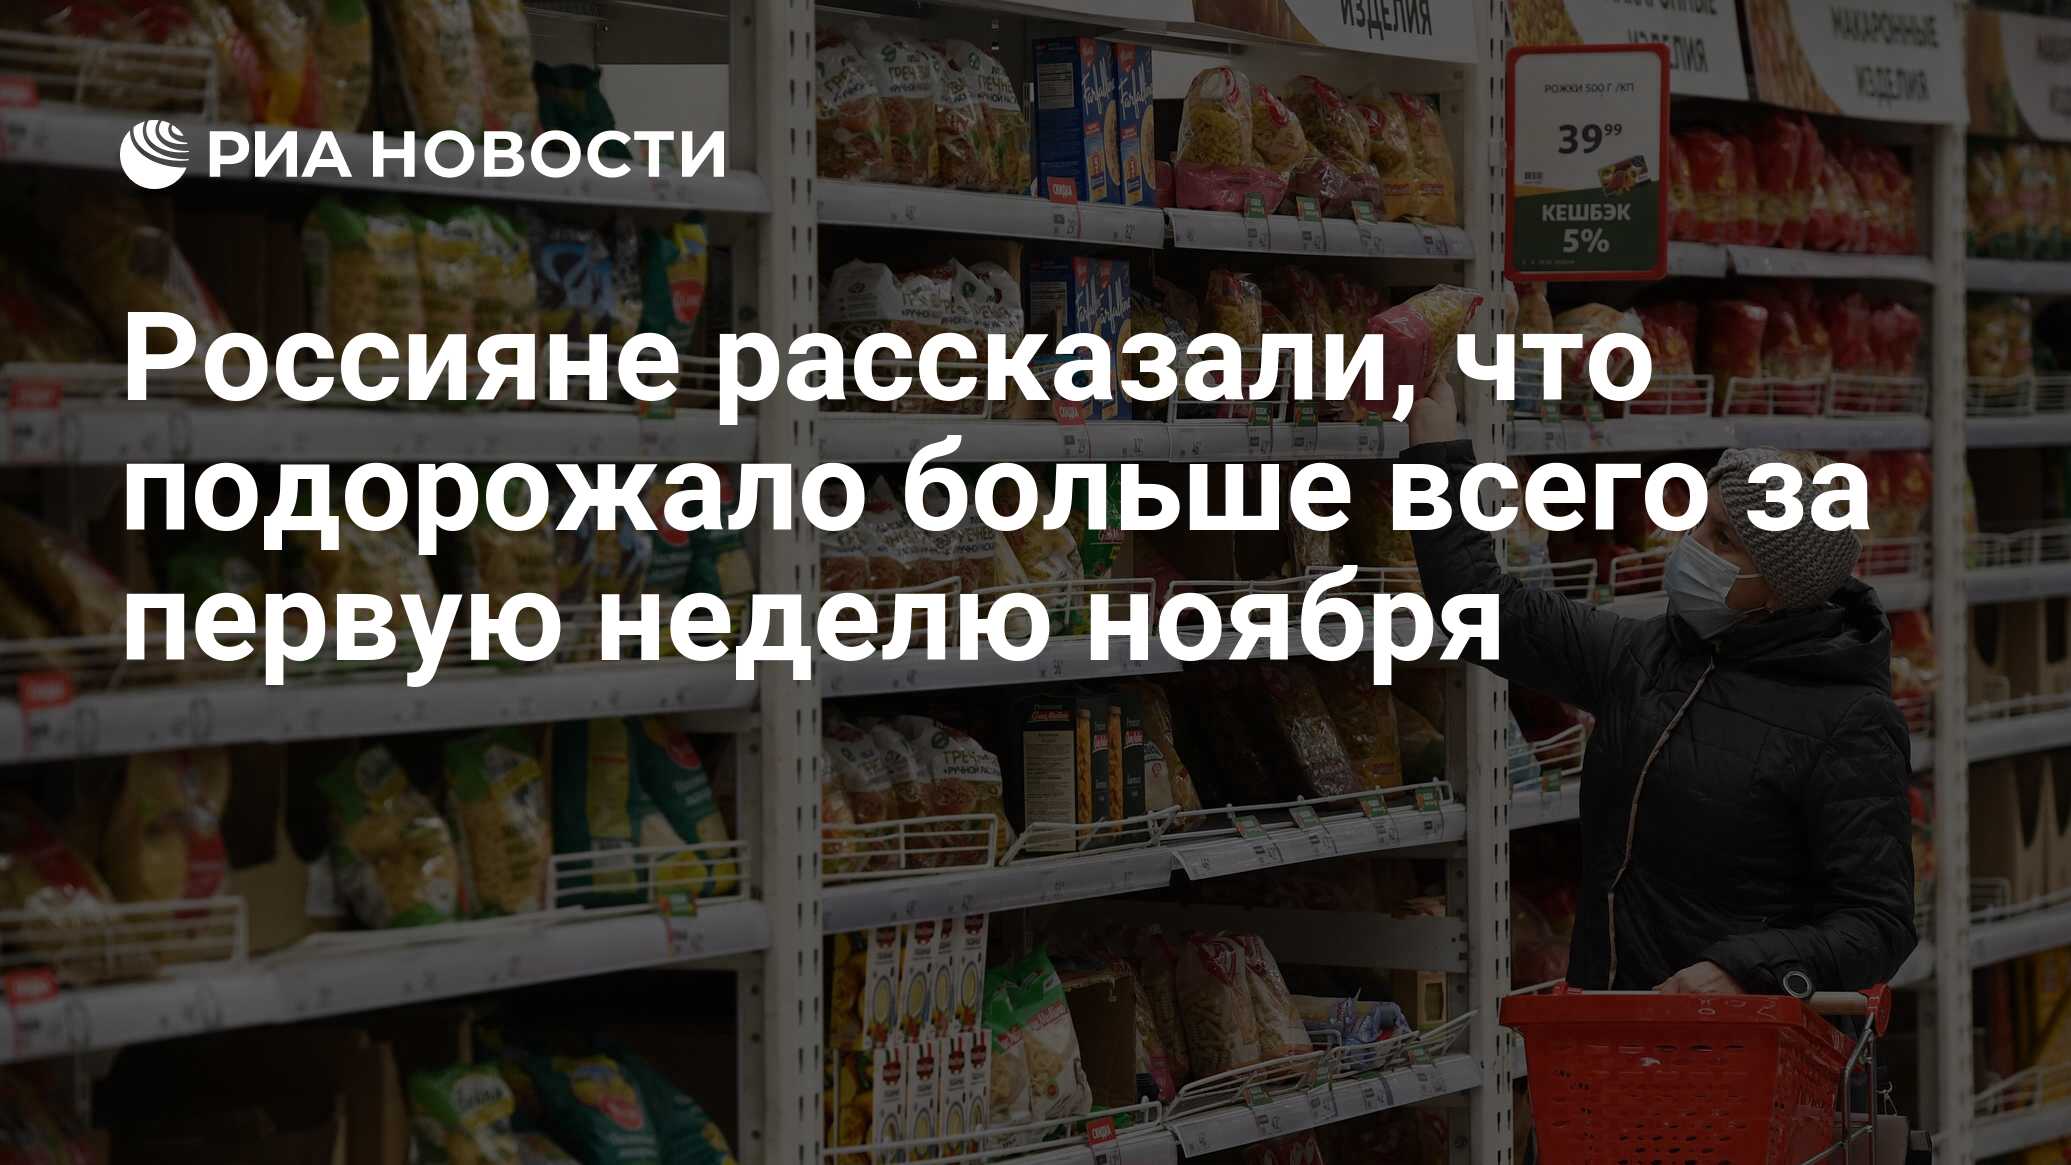 Российские продукты. Социально необходимые товары. Дефицита нет интернет магазин. Топ менеджмент Ашан Россия.